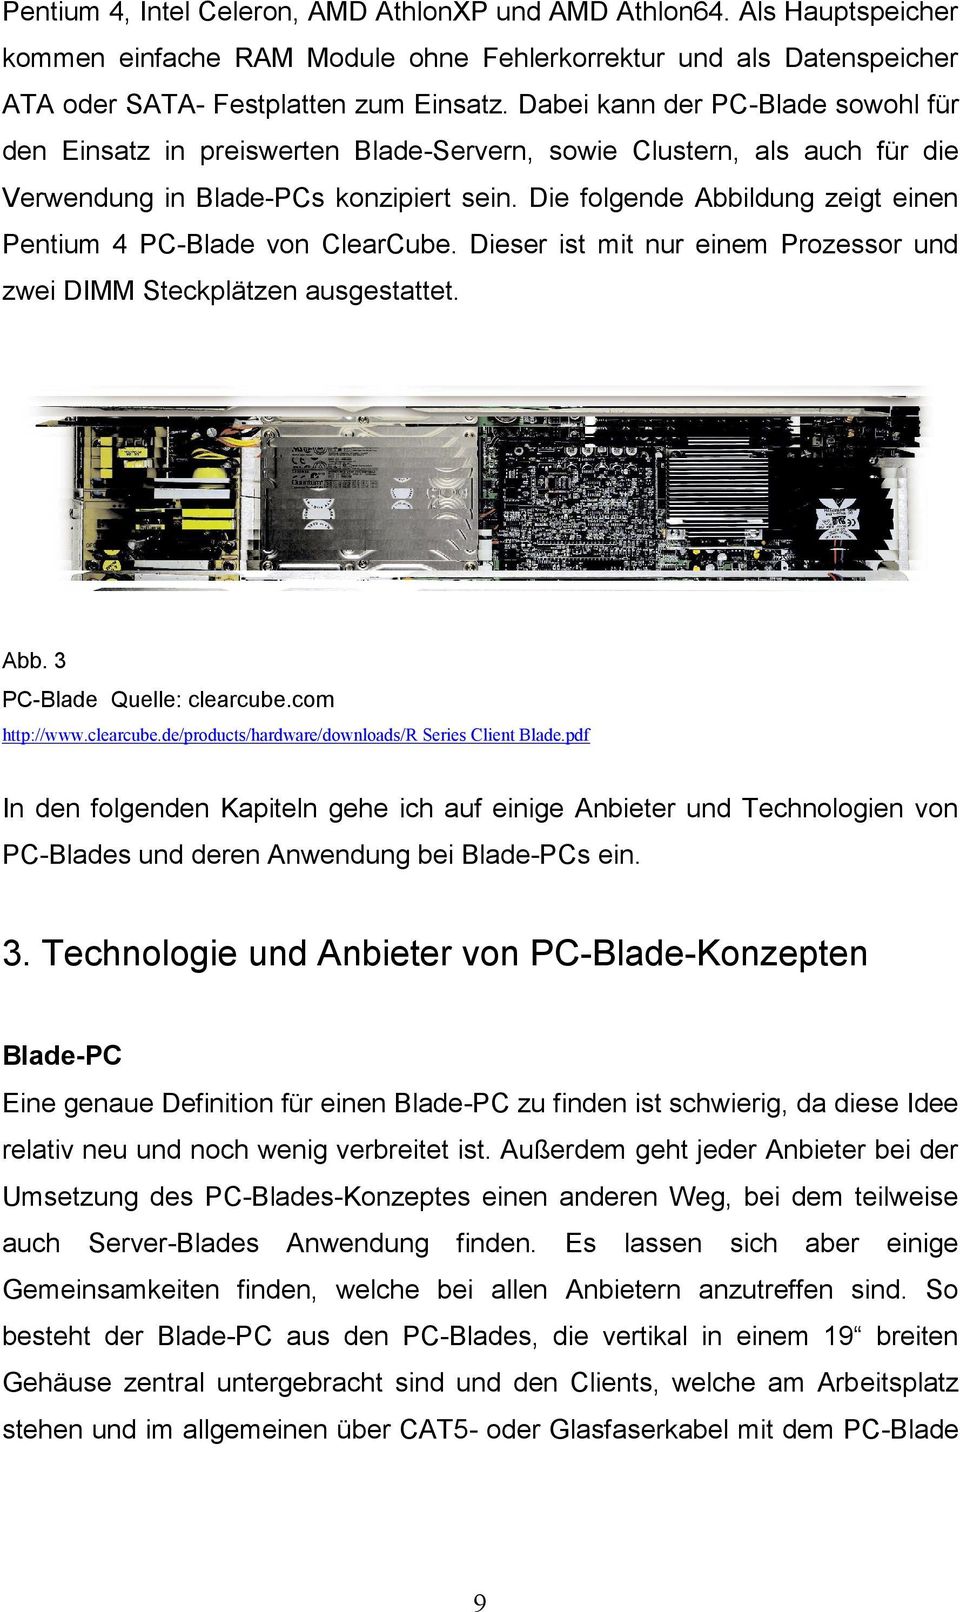 Die folgende Abbildung zeigt einen Pentium 4 PC-Blade von ClearCube. Dieser ist mit nur einem Prozessor und zwei DIMM Steckplätzen ausgestattet. Abb. 3 PC-Blade Quelle: clearcube.com http://www.